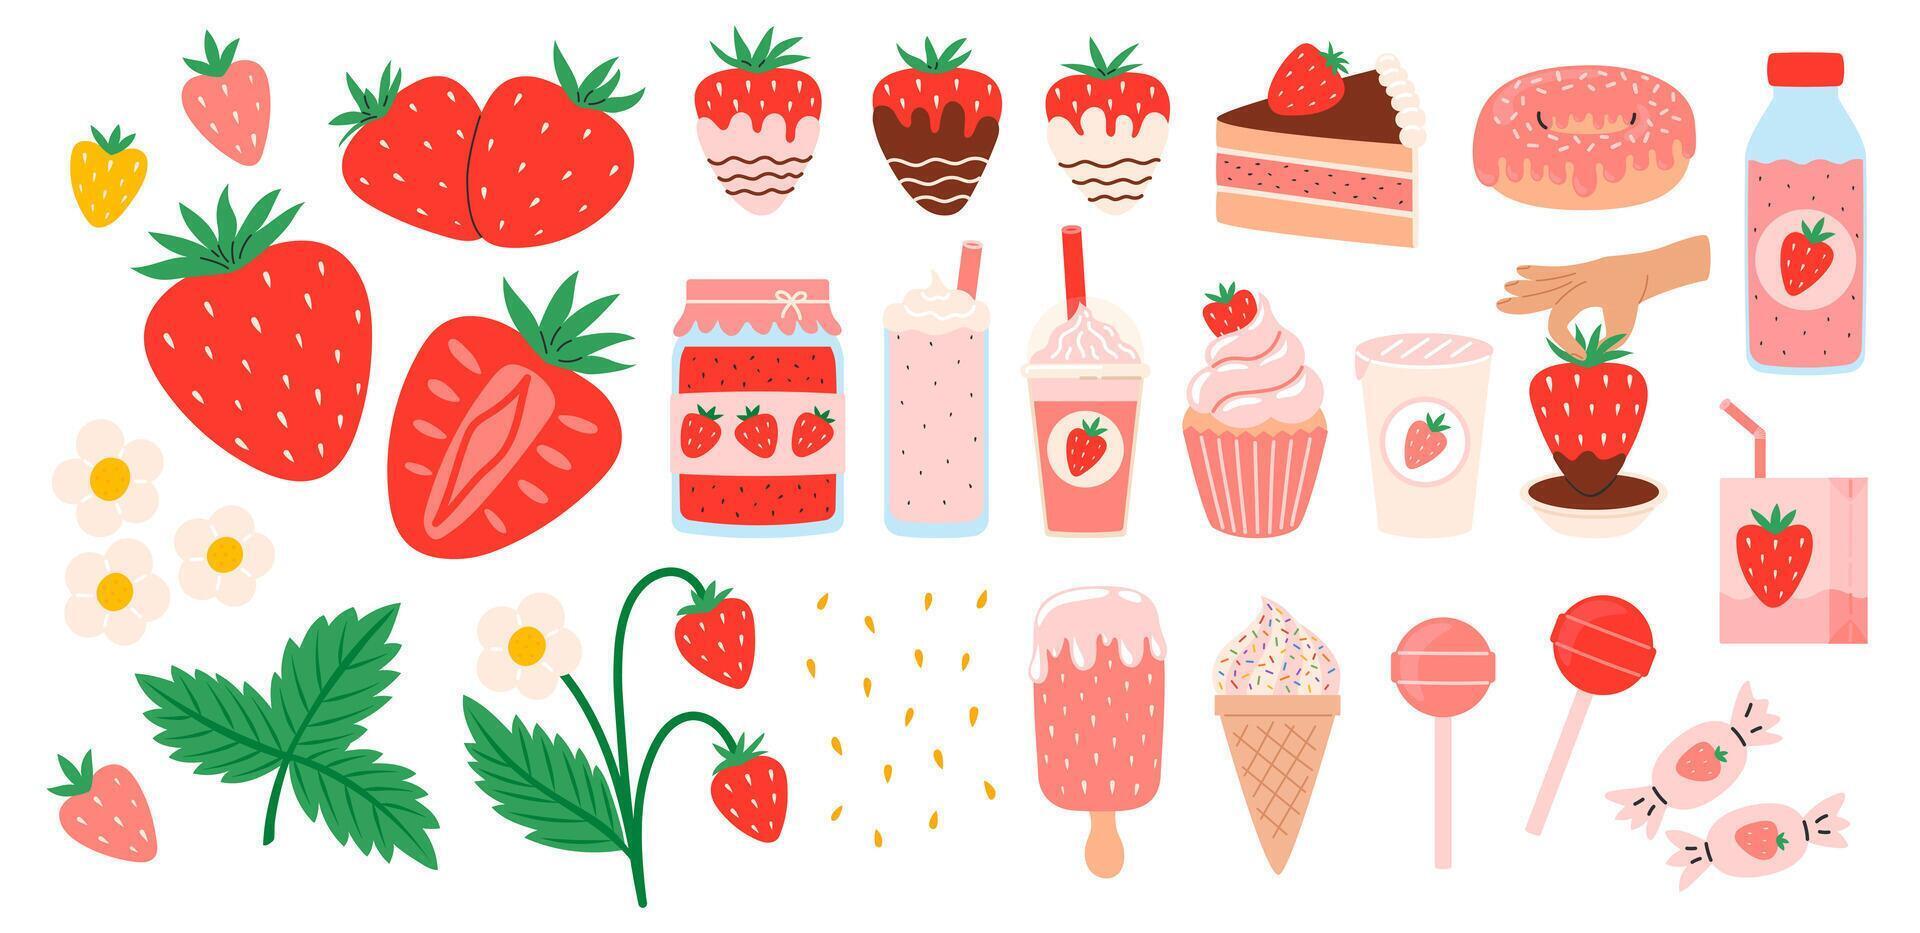 Erdbeere Satz. Sommer- erfrischend Getränke, Süßigkeiten und Nachspeisen mit Geschmack von Erdbeeren. Schokolade Erdbeere. Blumen, Blütenblätter, Erdbeeren. eben Illustration isoliert auf Weiß Hintergrund vektor